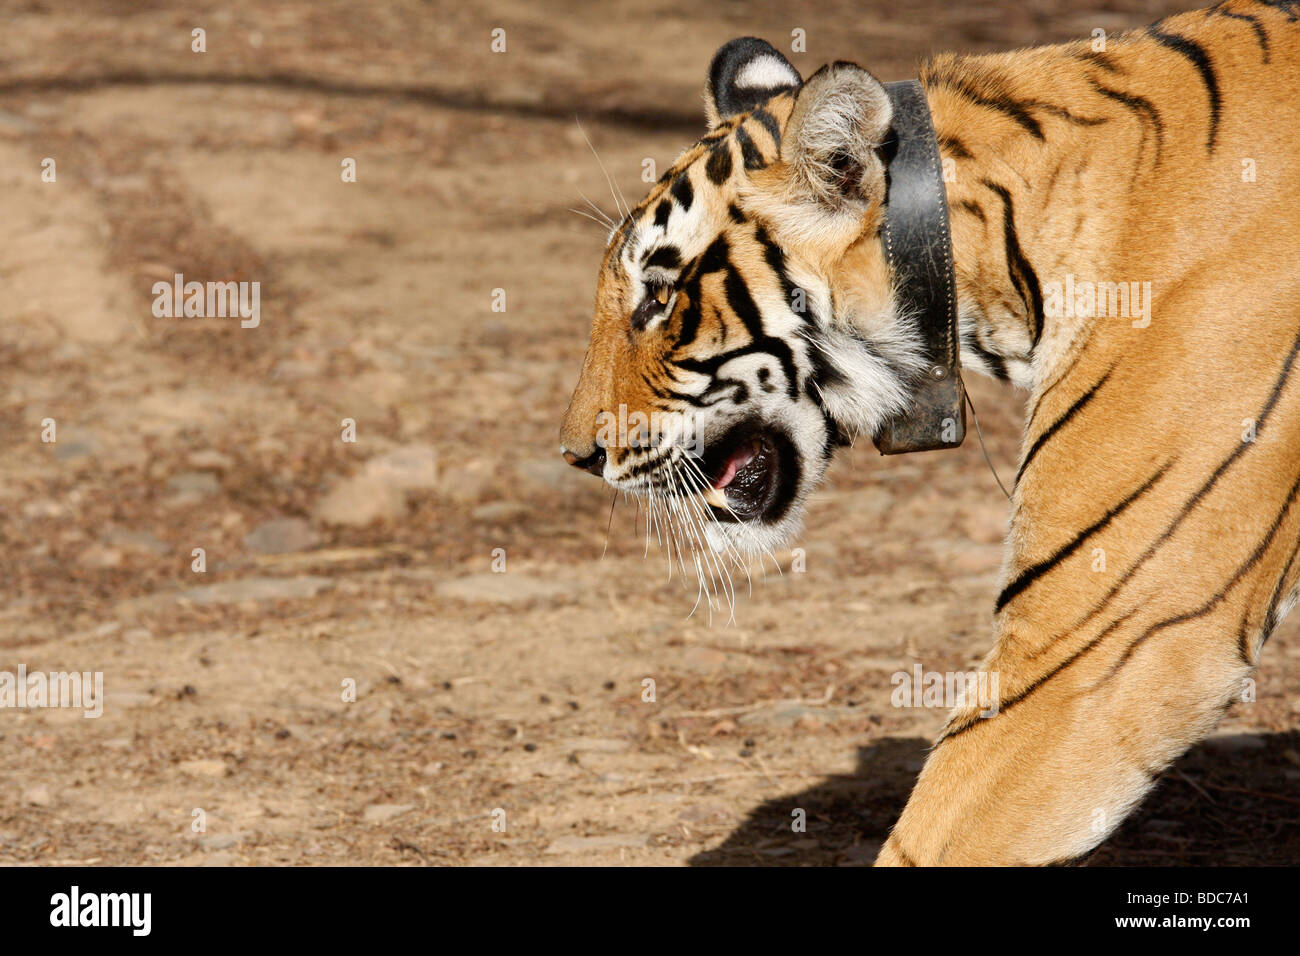 Bengal Tiger Panthera tigris at Ranthambhore wearing a radio tracking collar Stock Photo